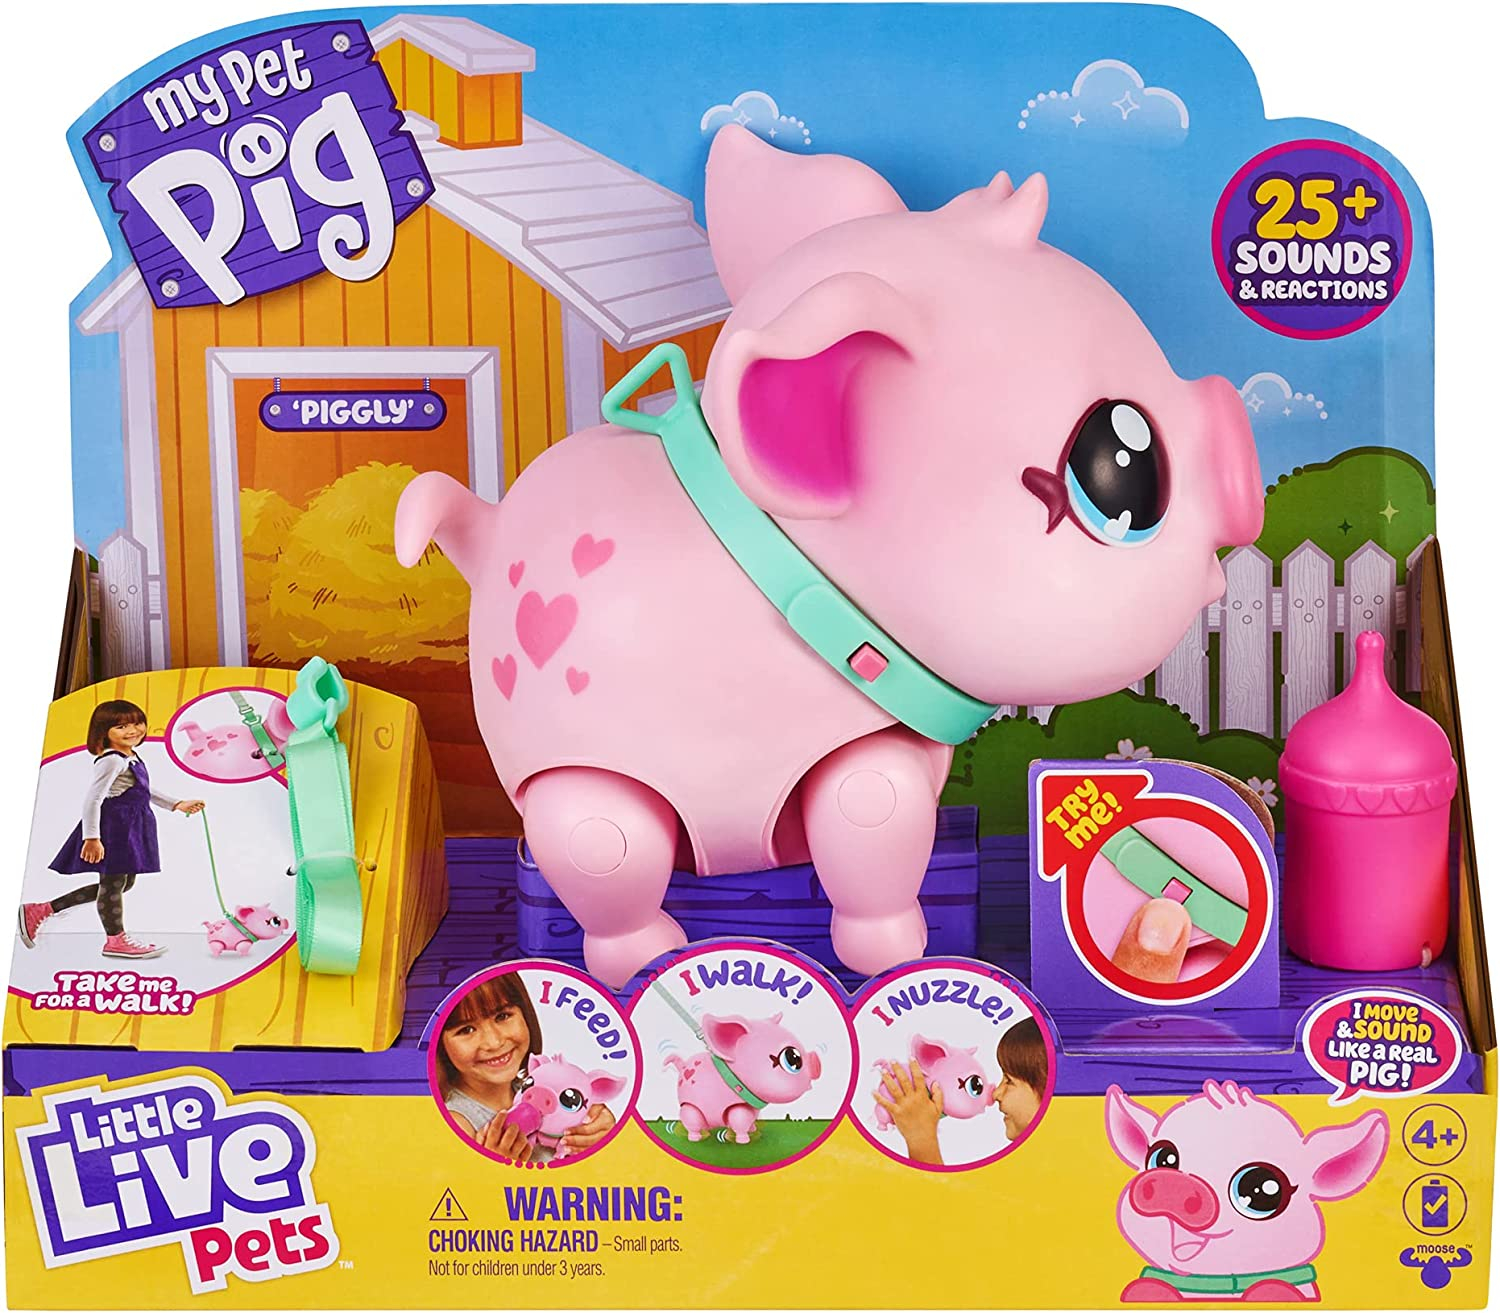 Purcelus Piggly interactiv, Little Live Pets - My Pet Pig